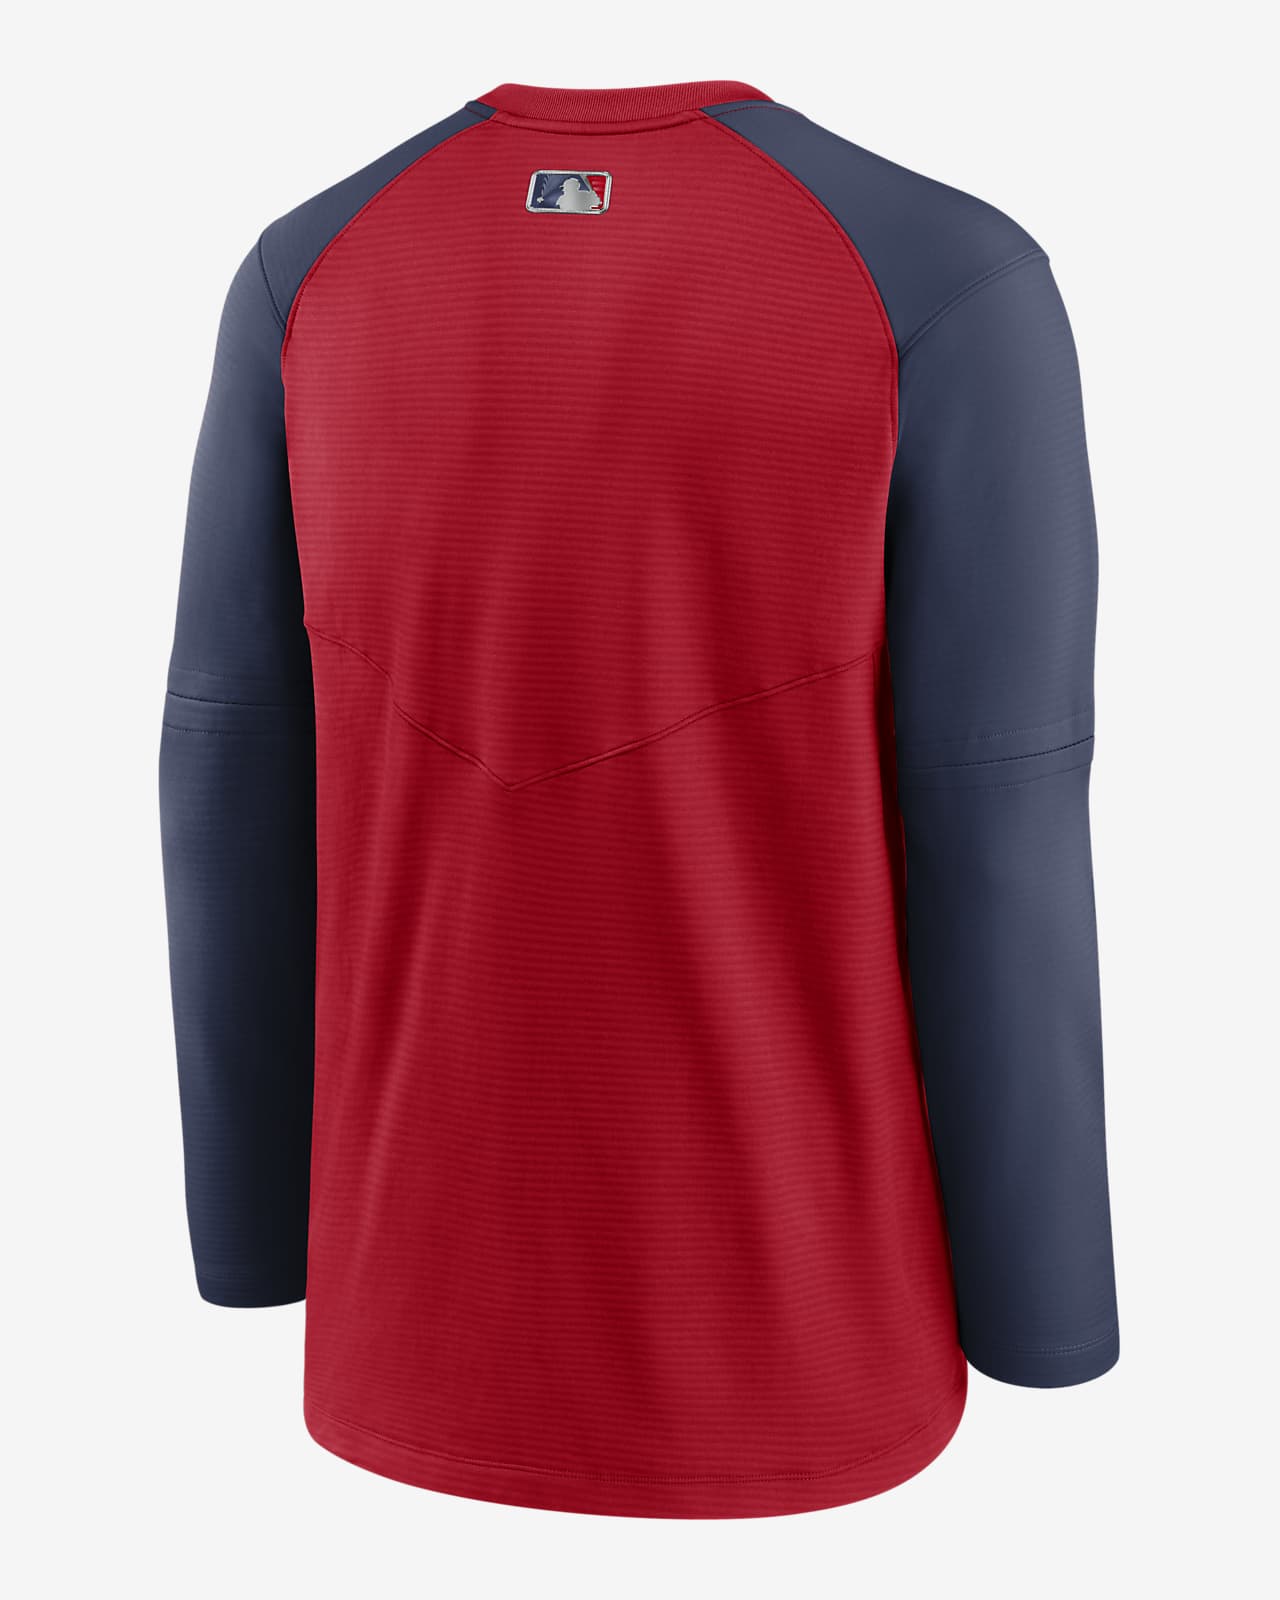 Nike Dri-FIT Pregame (MLB Boston Red Sox) Men's Long-Sleeve Top. Nike.com